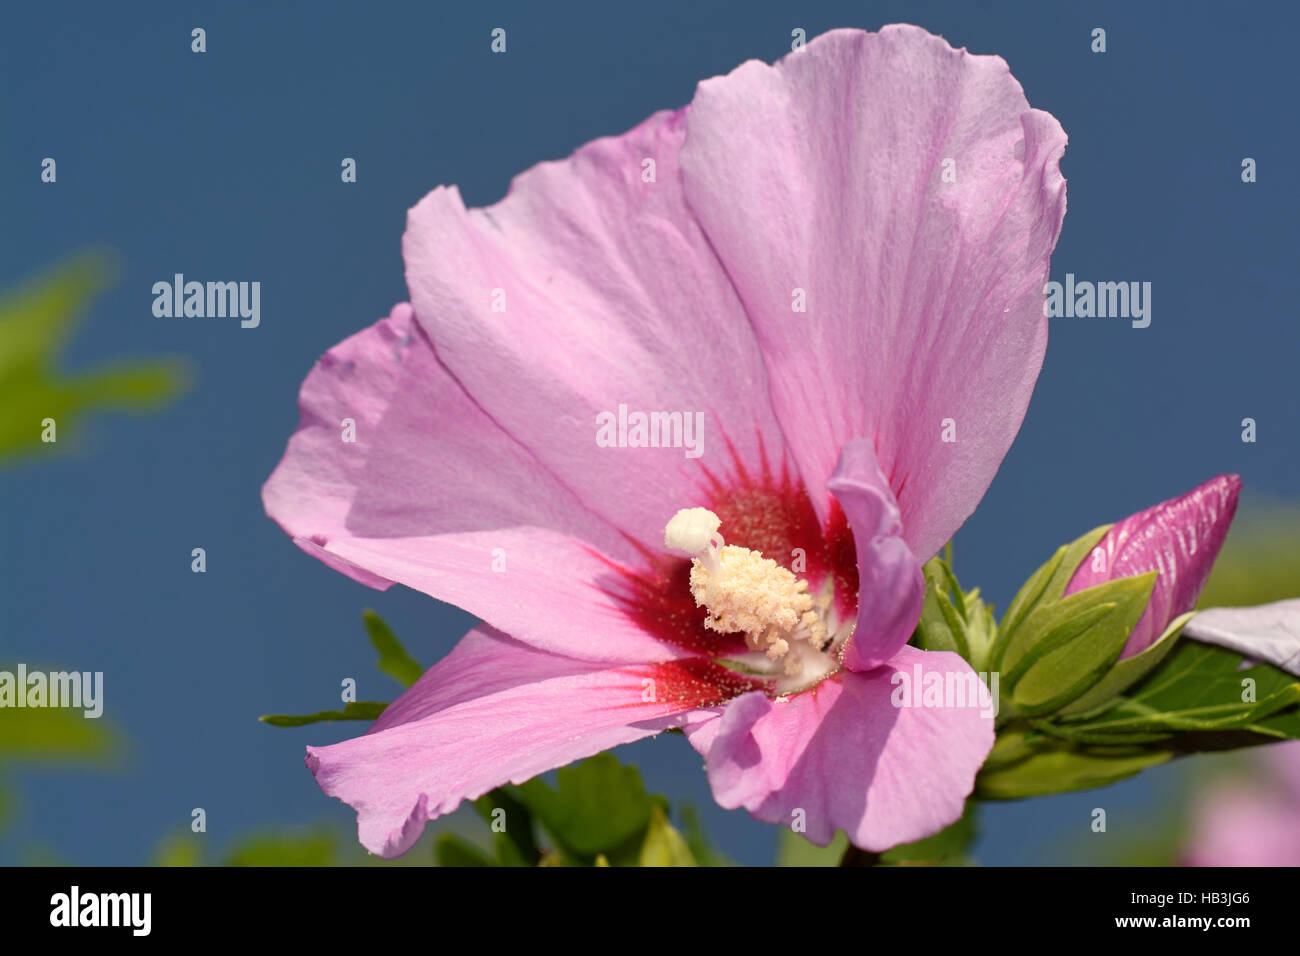 Hibiscus Stock Photo